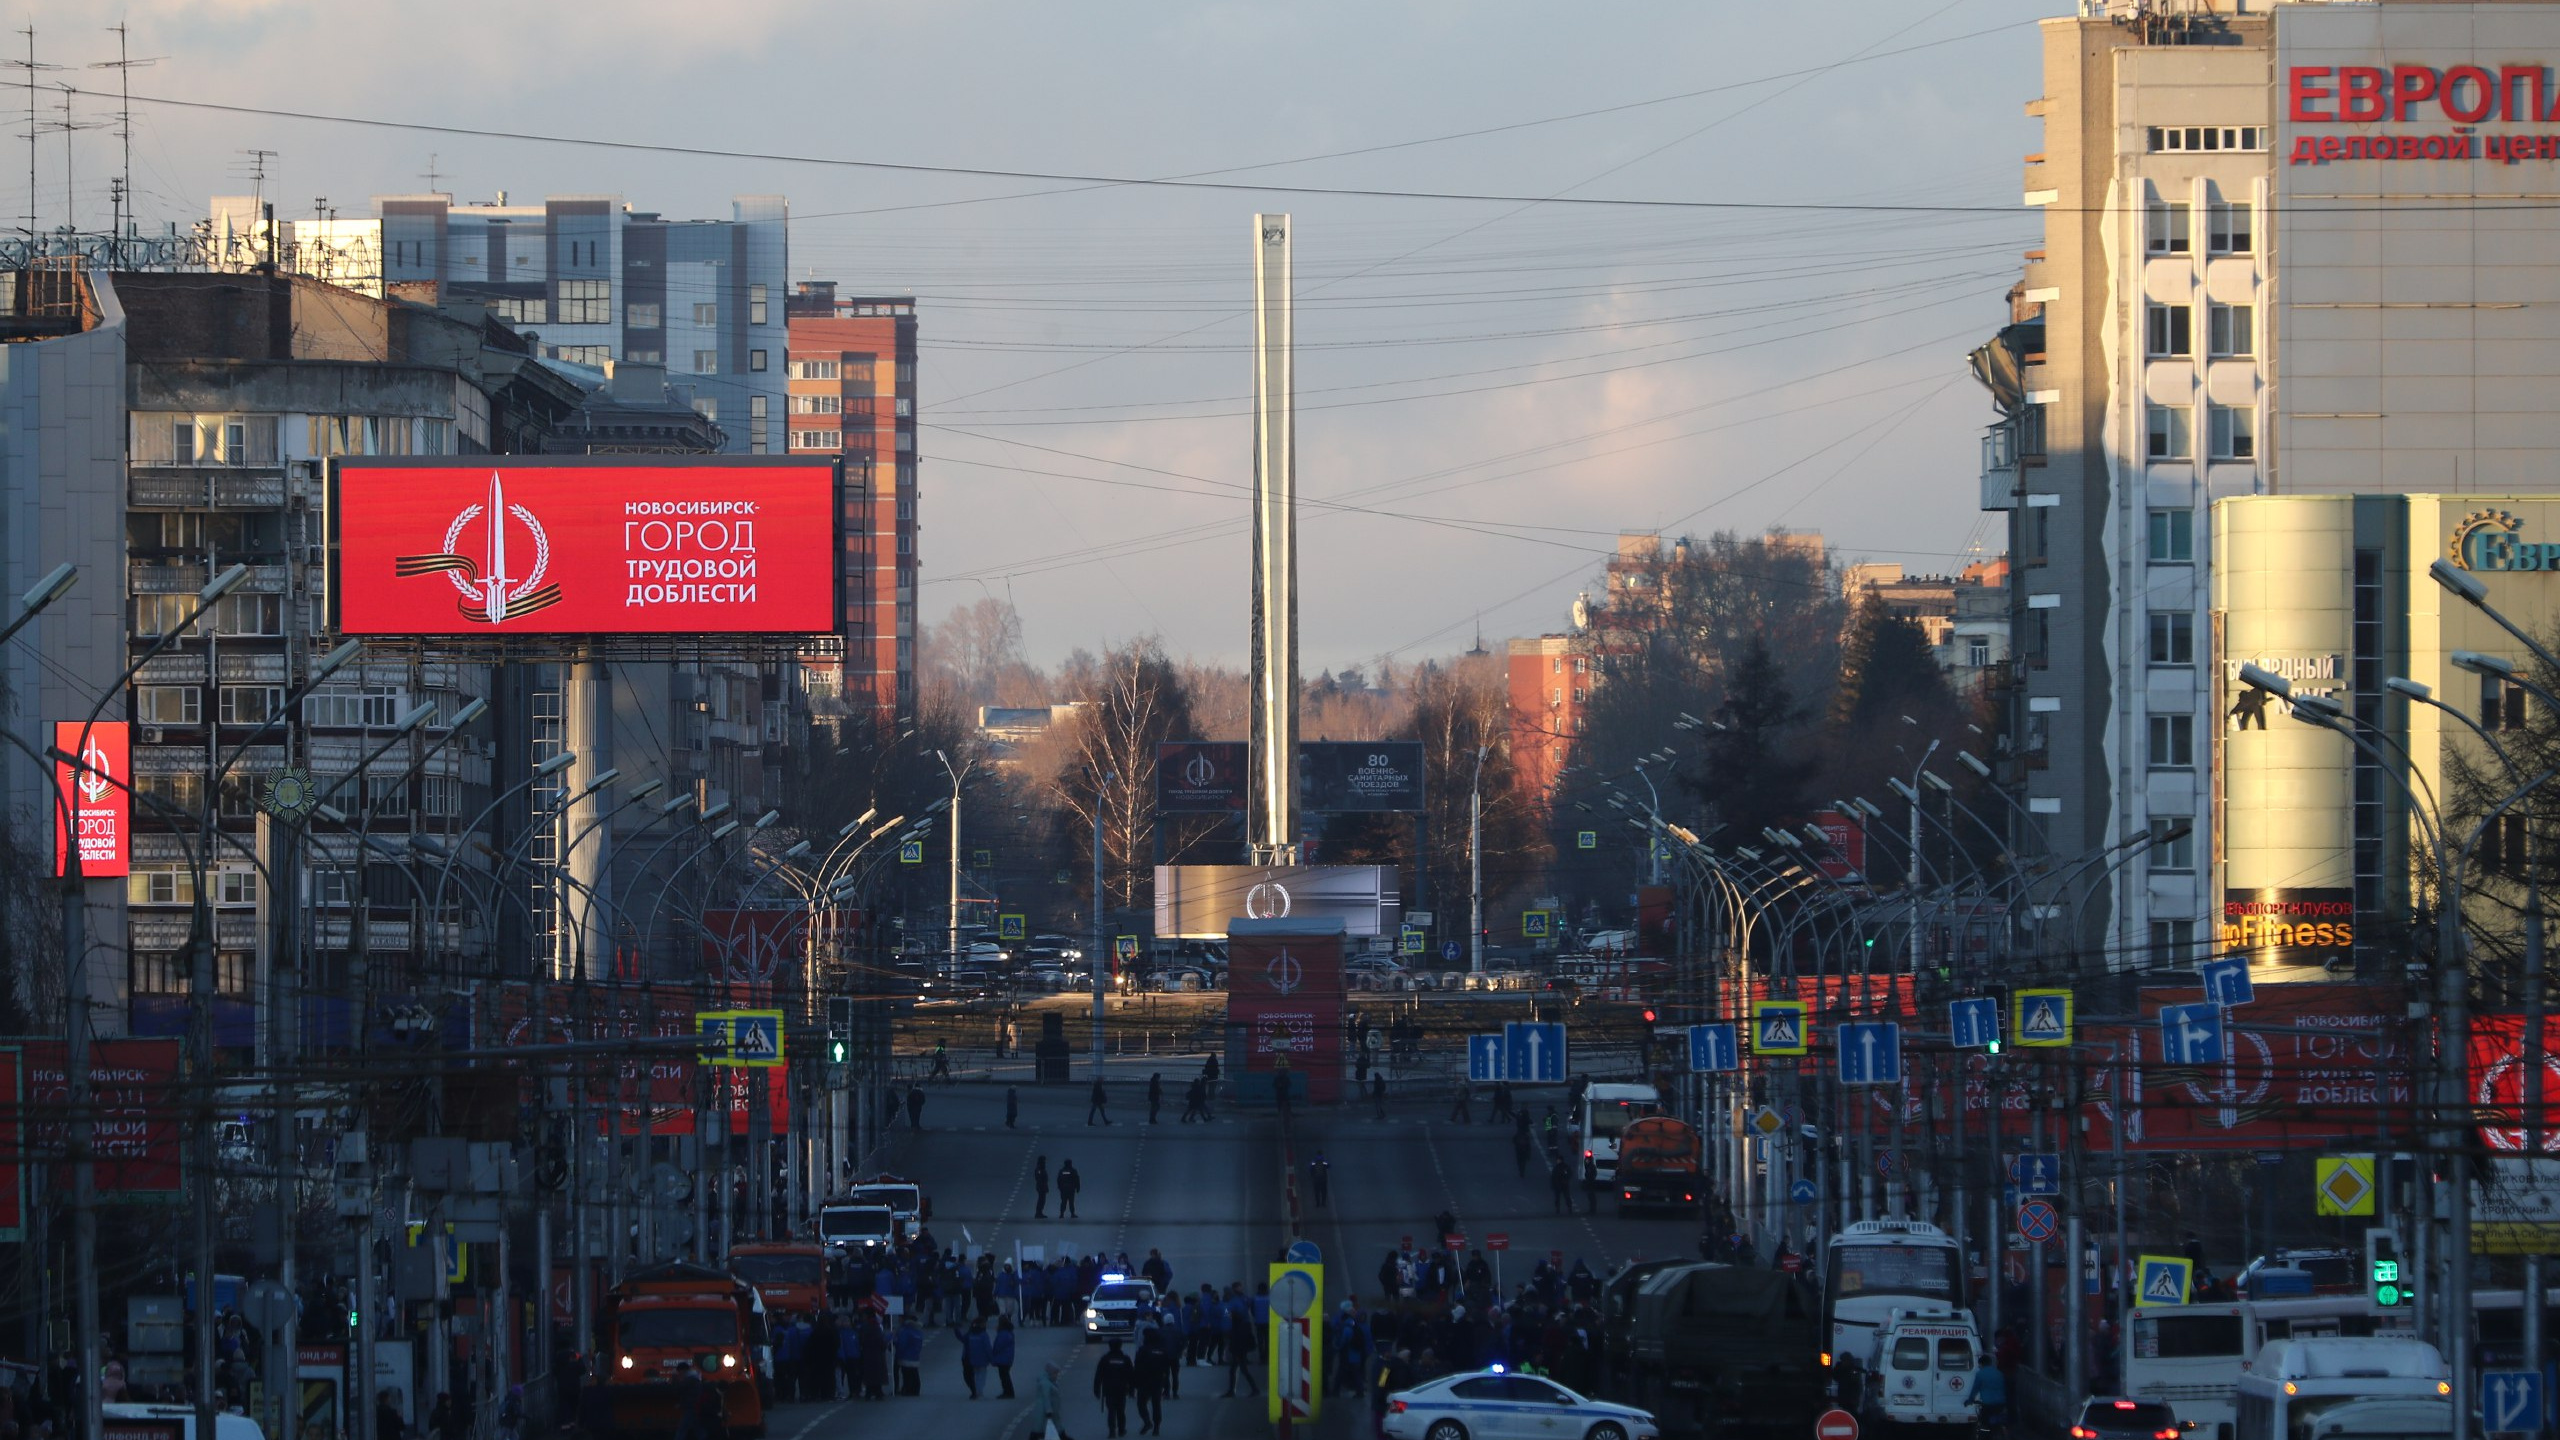 Самая дорогая — в Новосибирске. Сравниваем стелы «Город трудовой доблести» в городах России